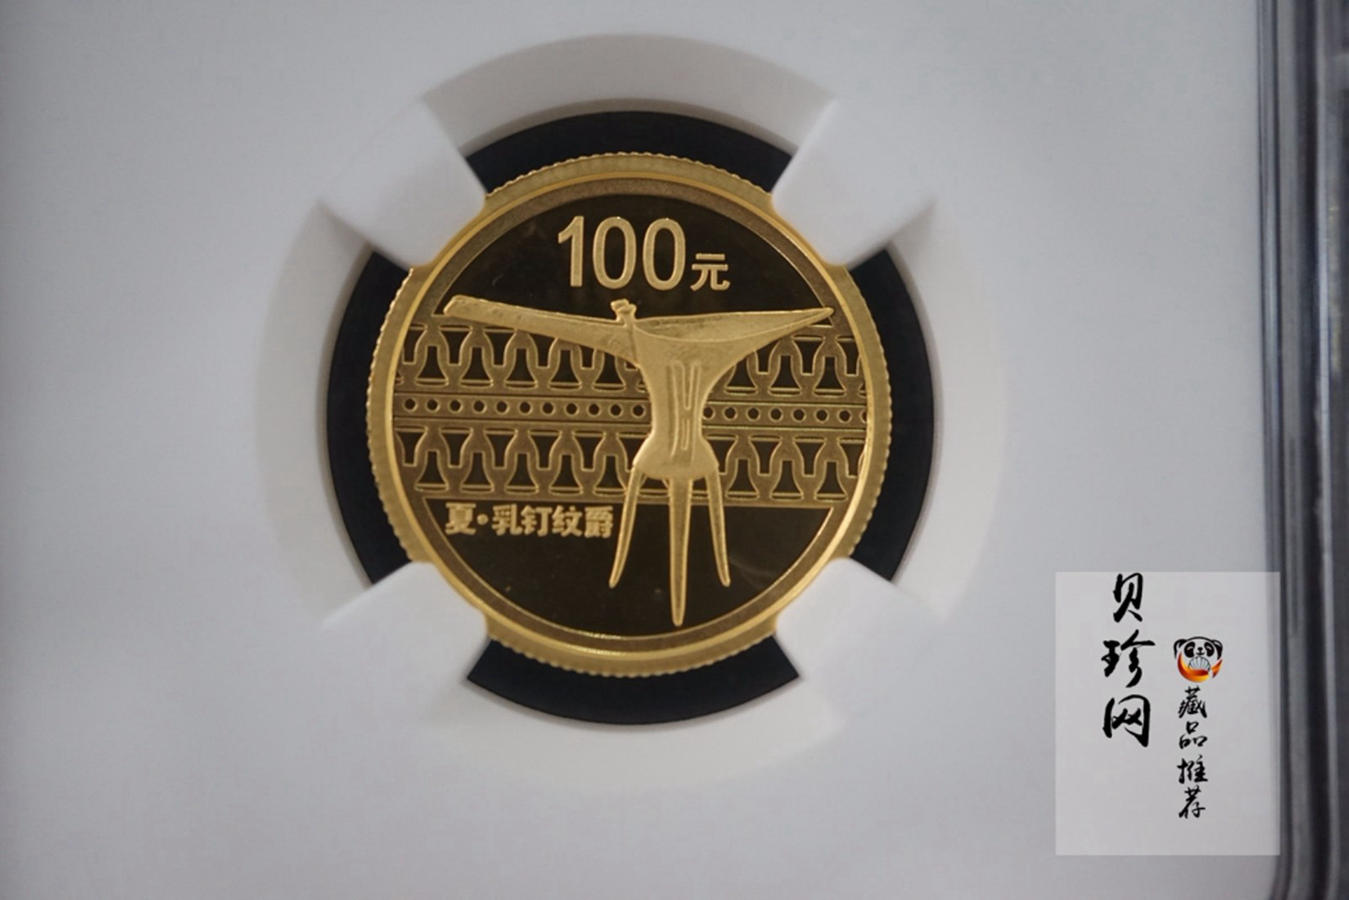 【120602】2012年中国青铜器第（1）组-夏·乳钉纹爵1/4盎司精制金币